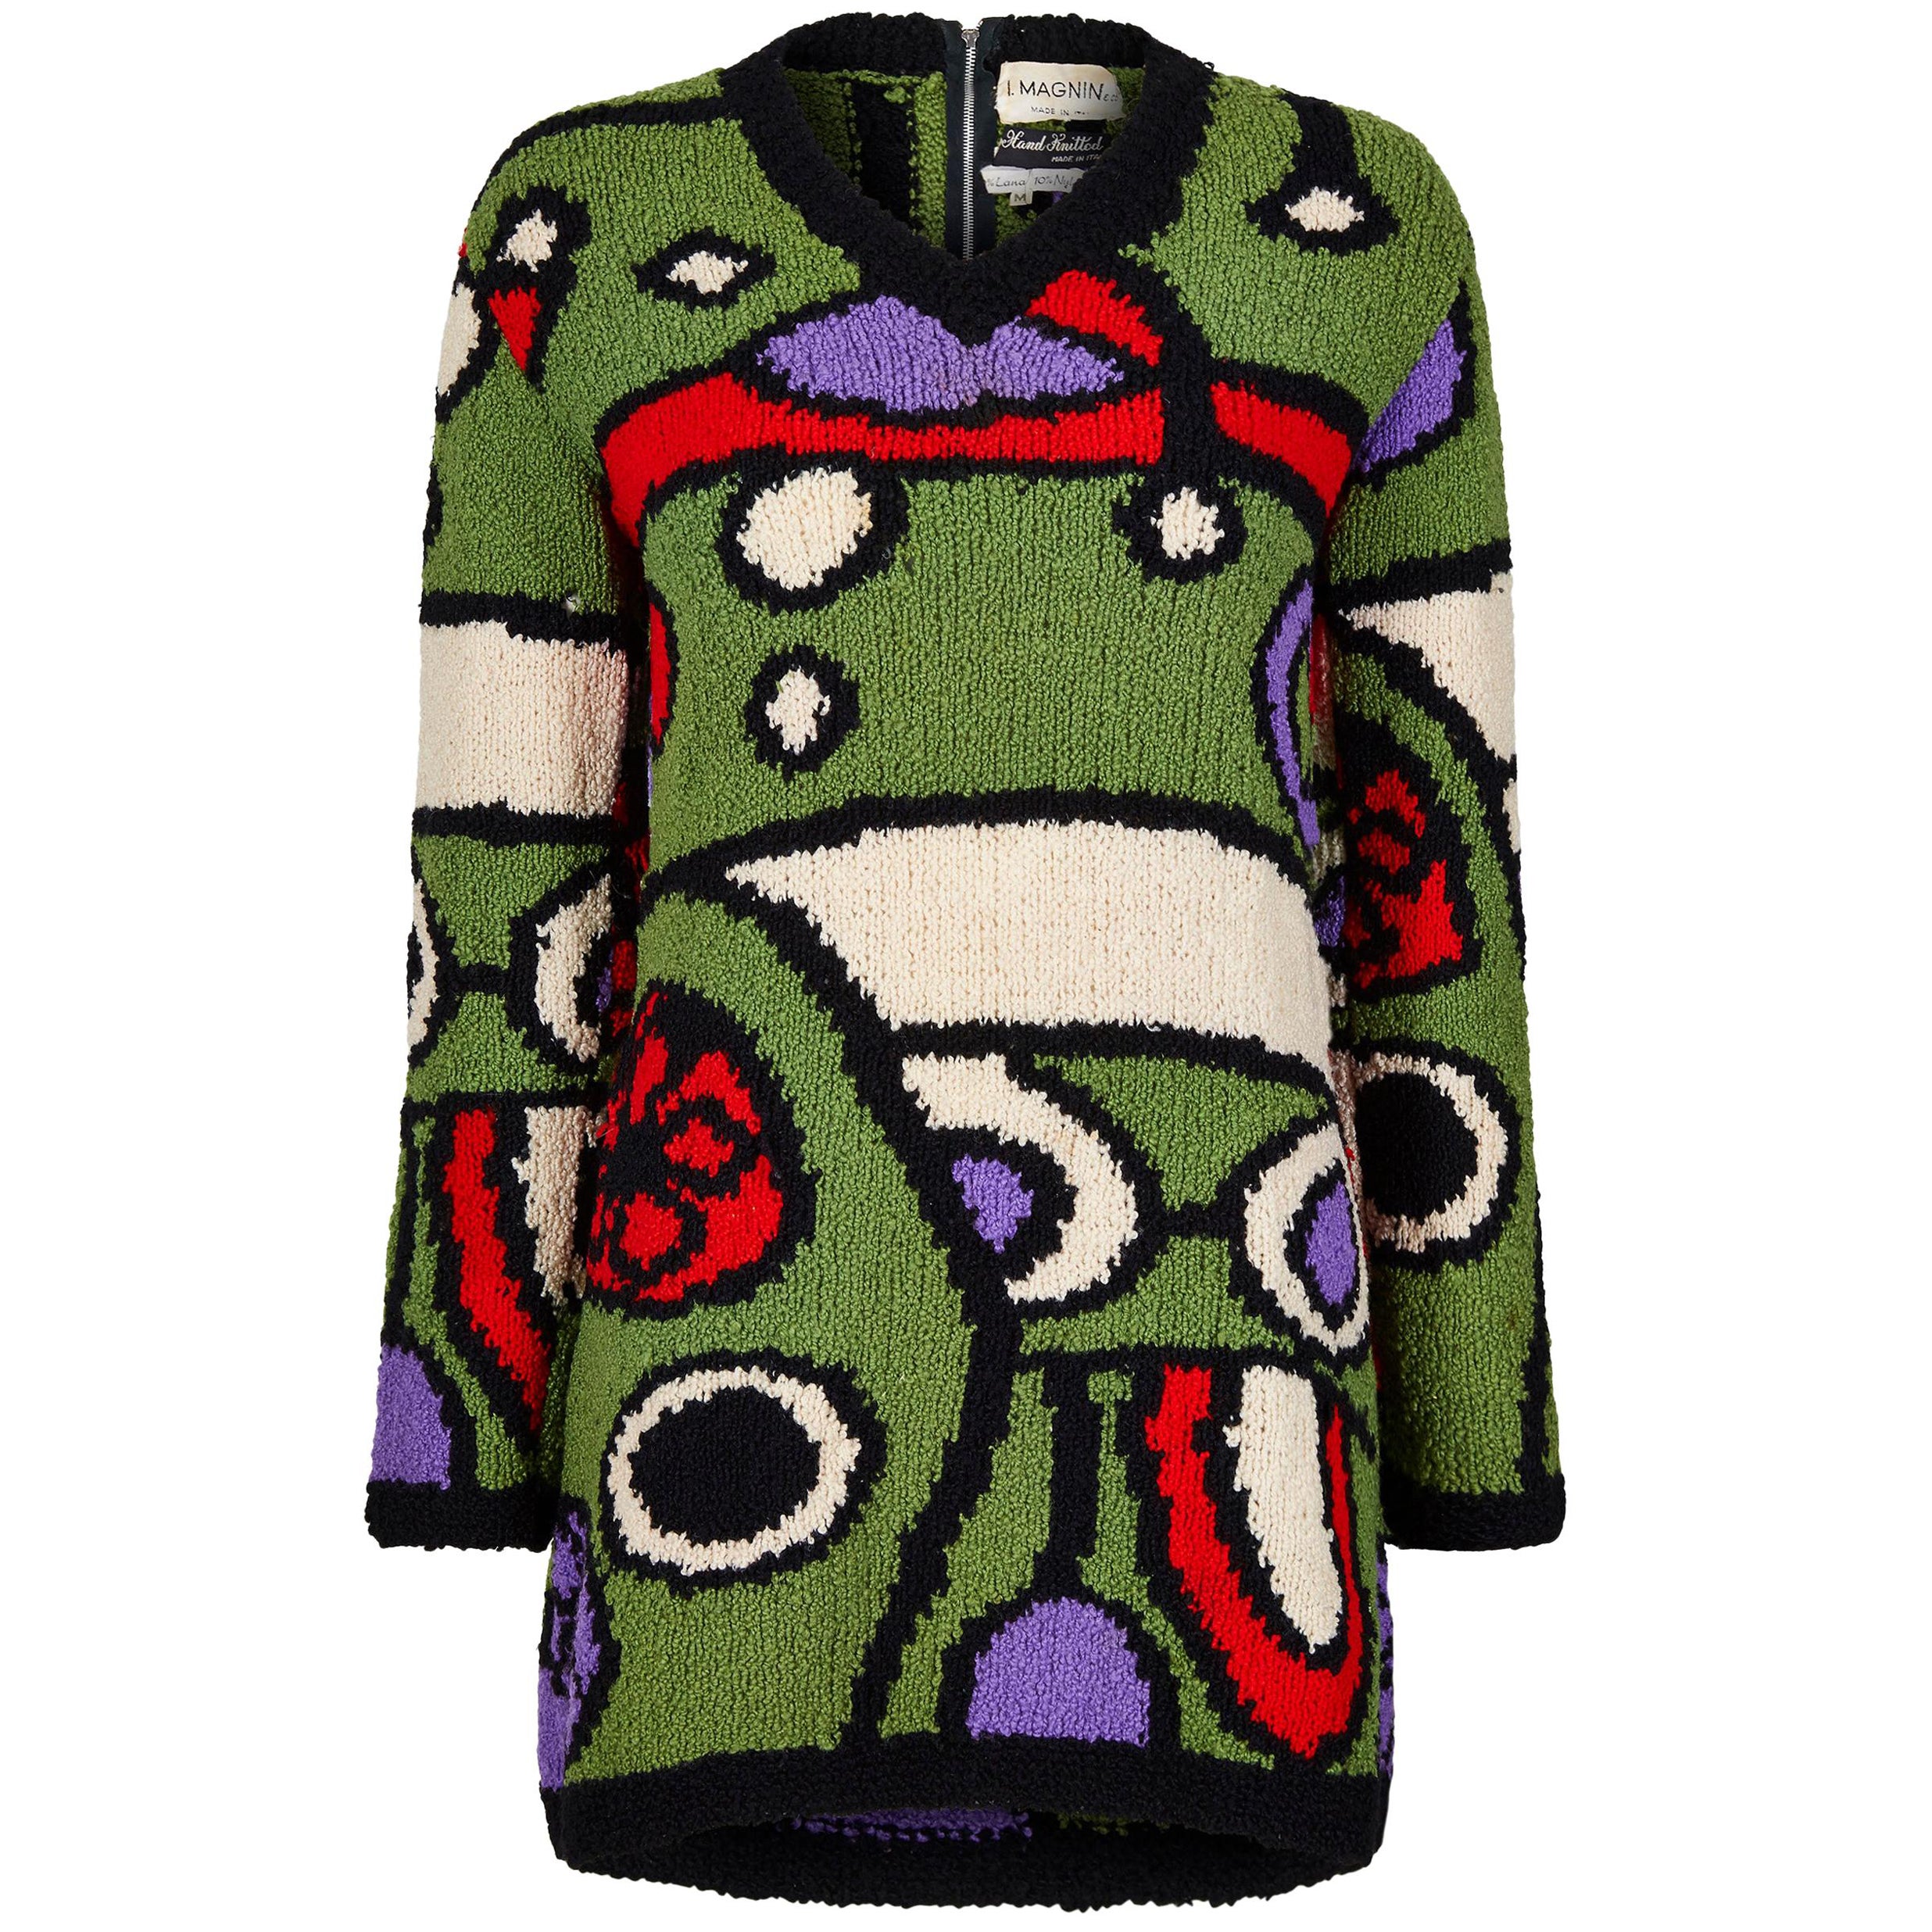 Pull en laine tricoté à la main I.Magnin des années 1970 avec motif abstrait